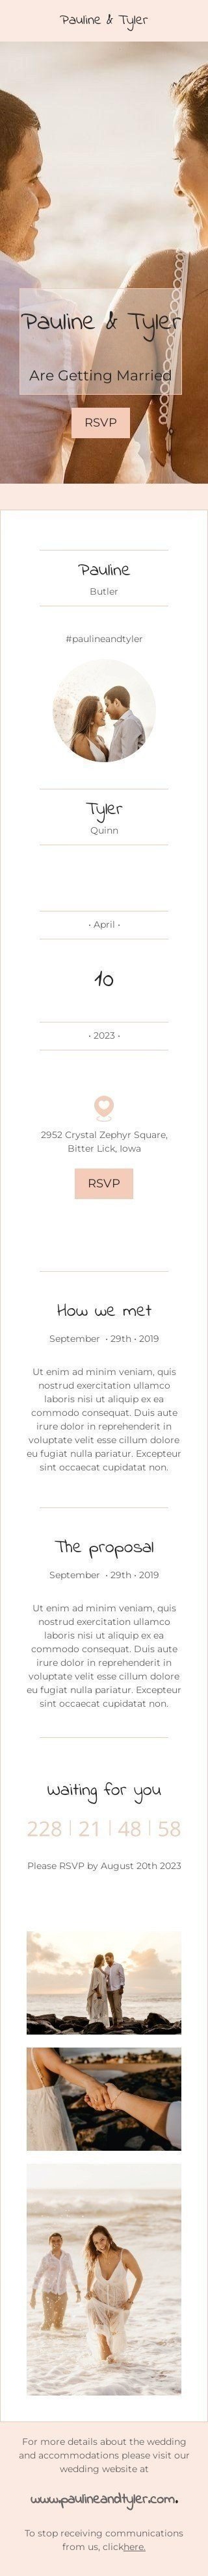 Modèle de courrier électronique Mariage «Pauline et Tyler se marient» pour le secteur Hobbies Affichage mobile